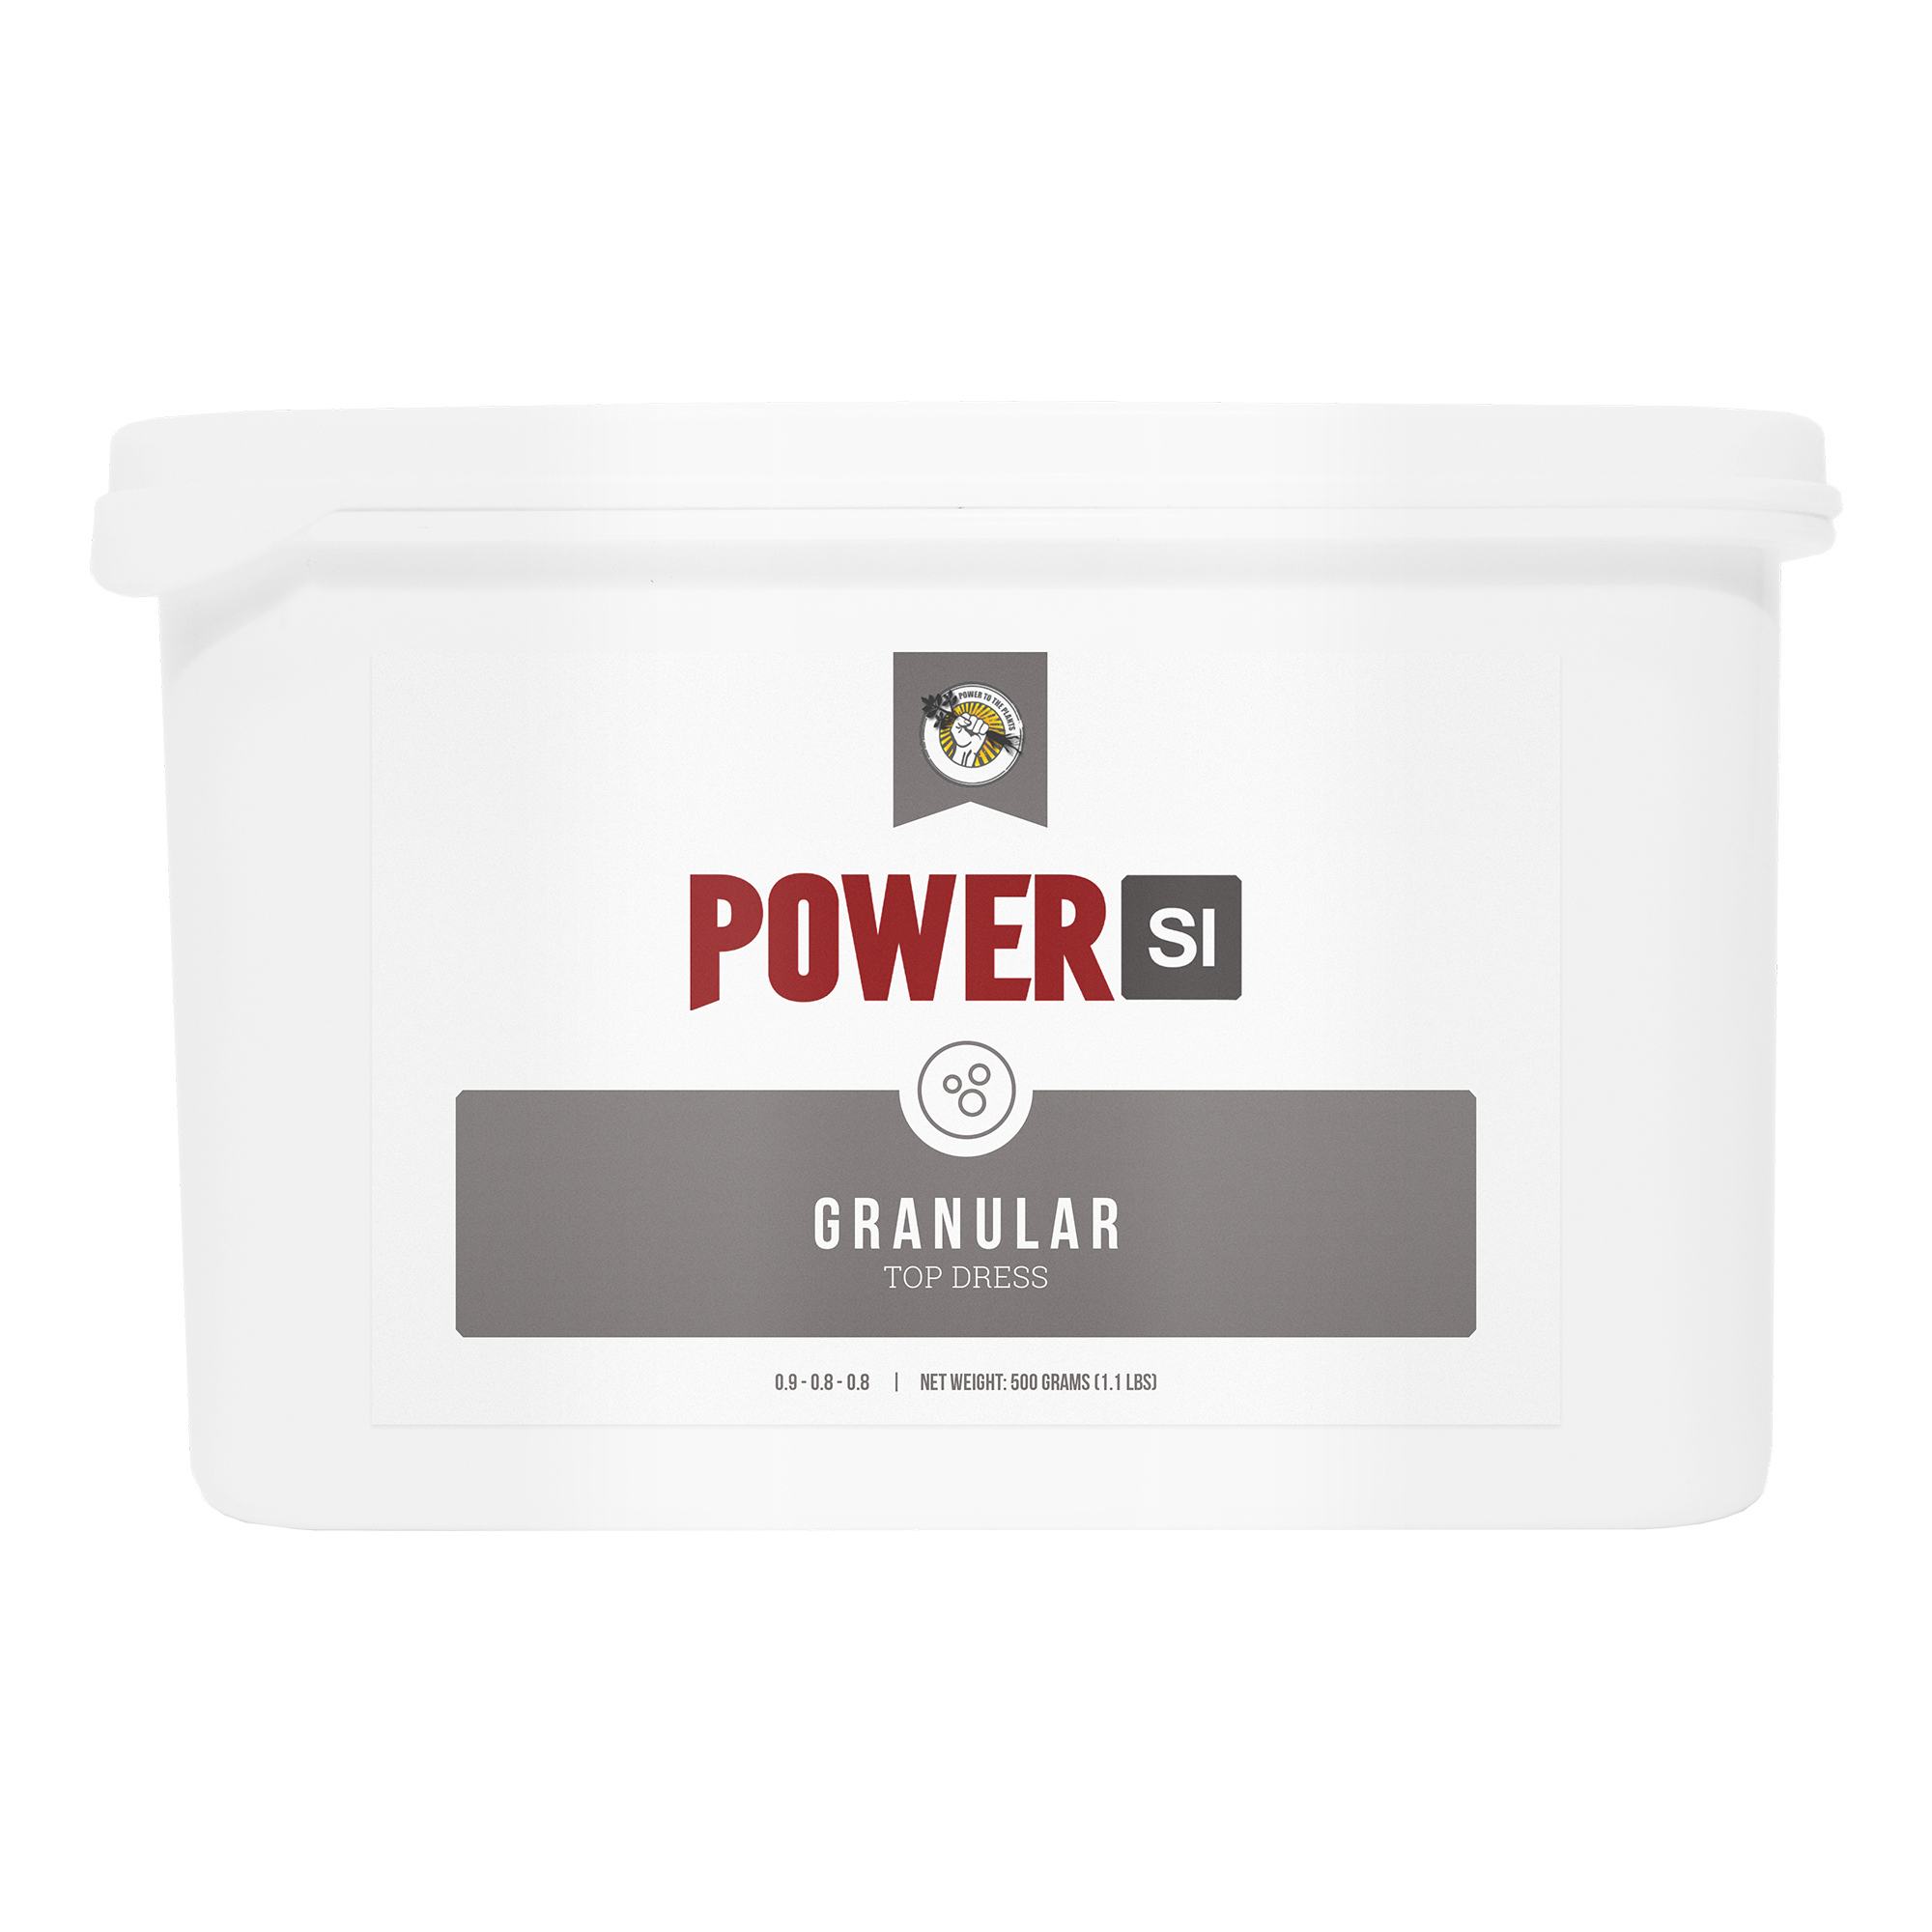 PowerSi-Granular-500g